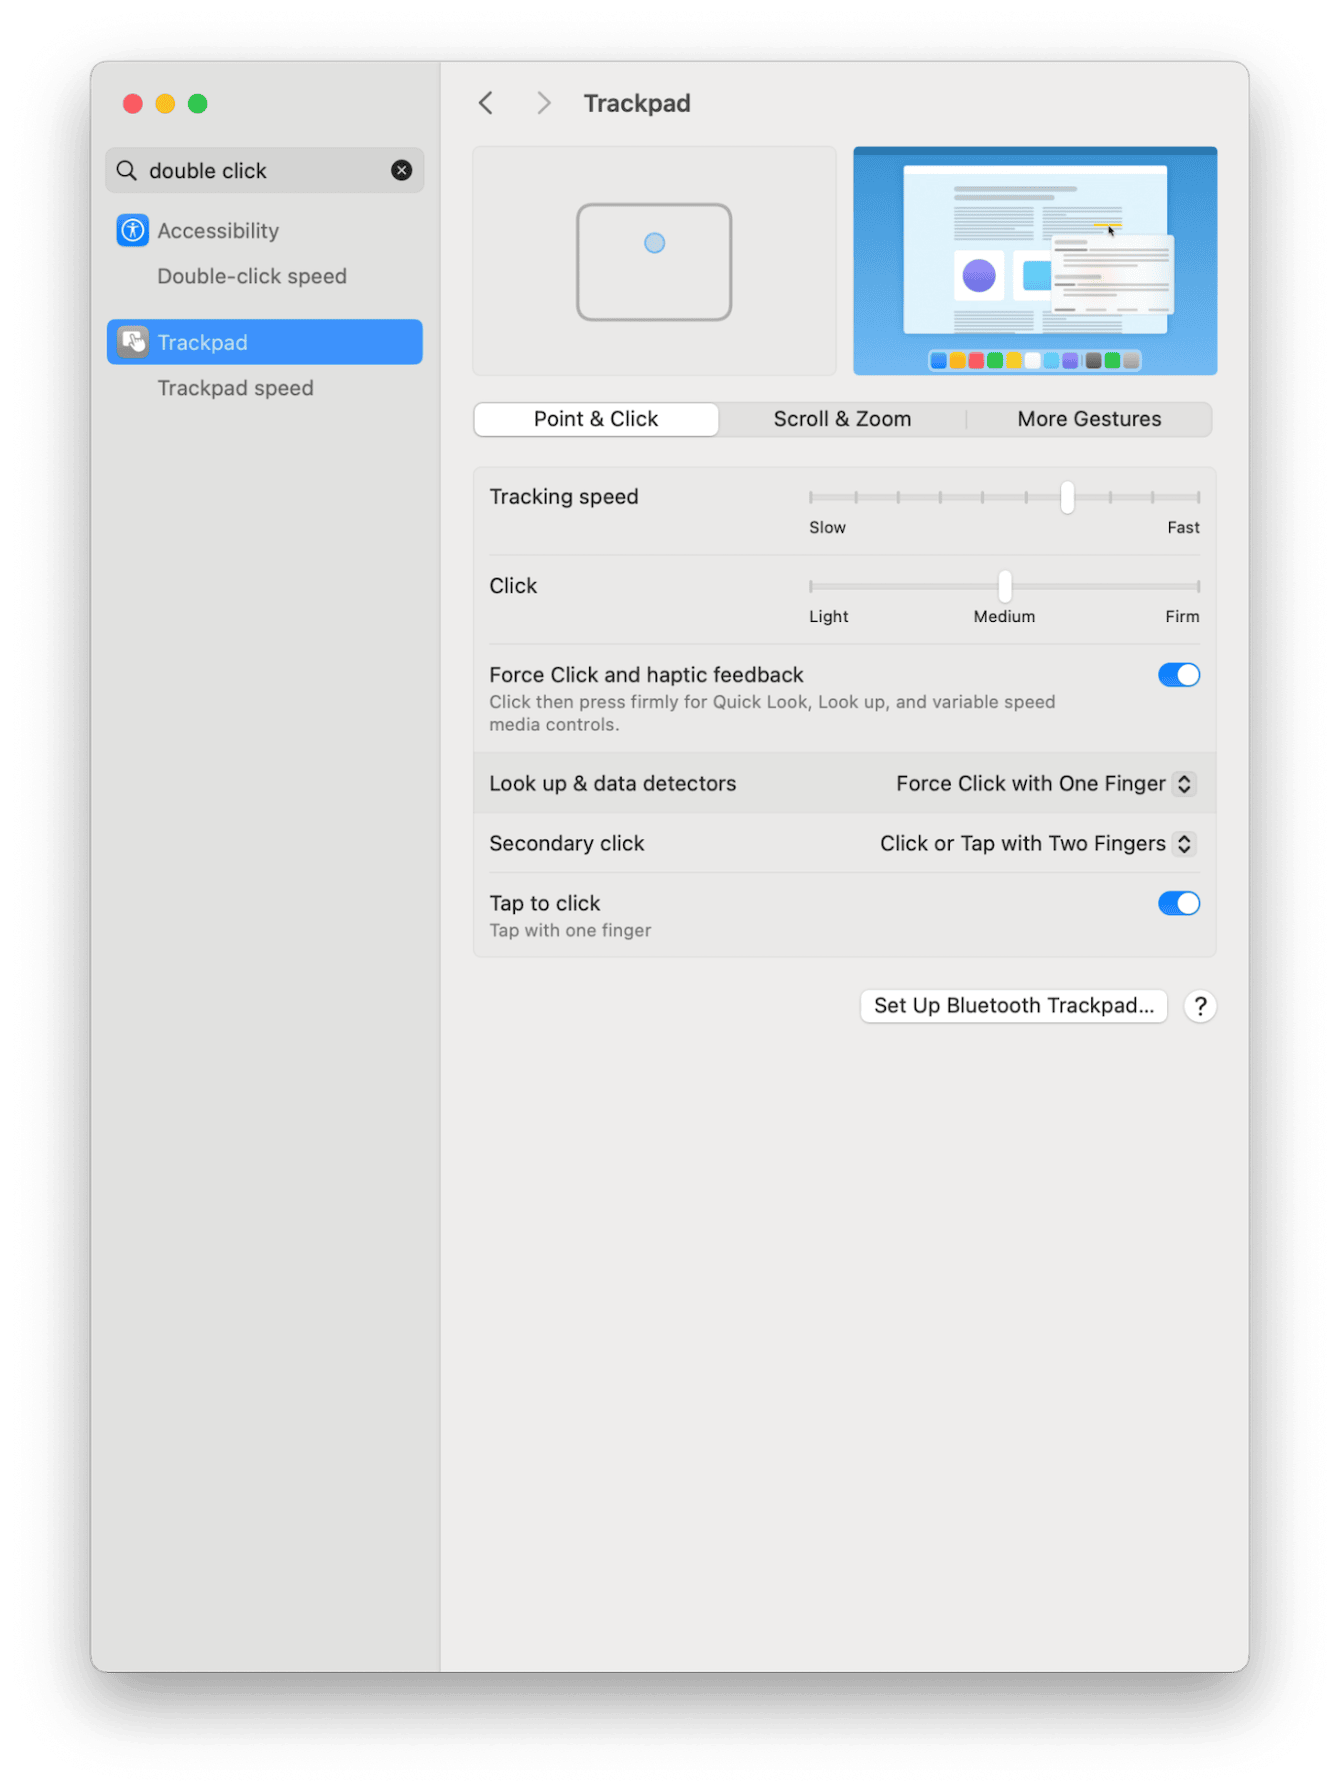 Trackpad settings on Mac